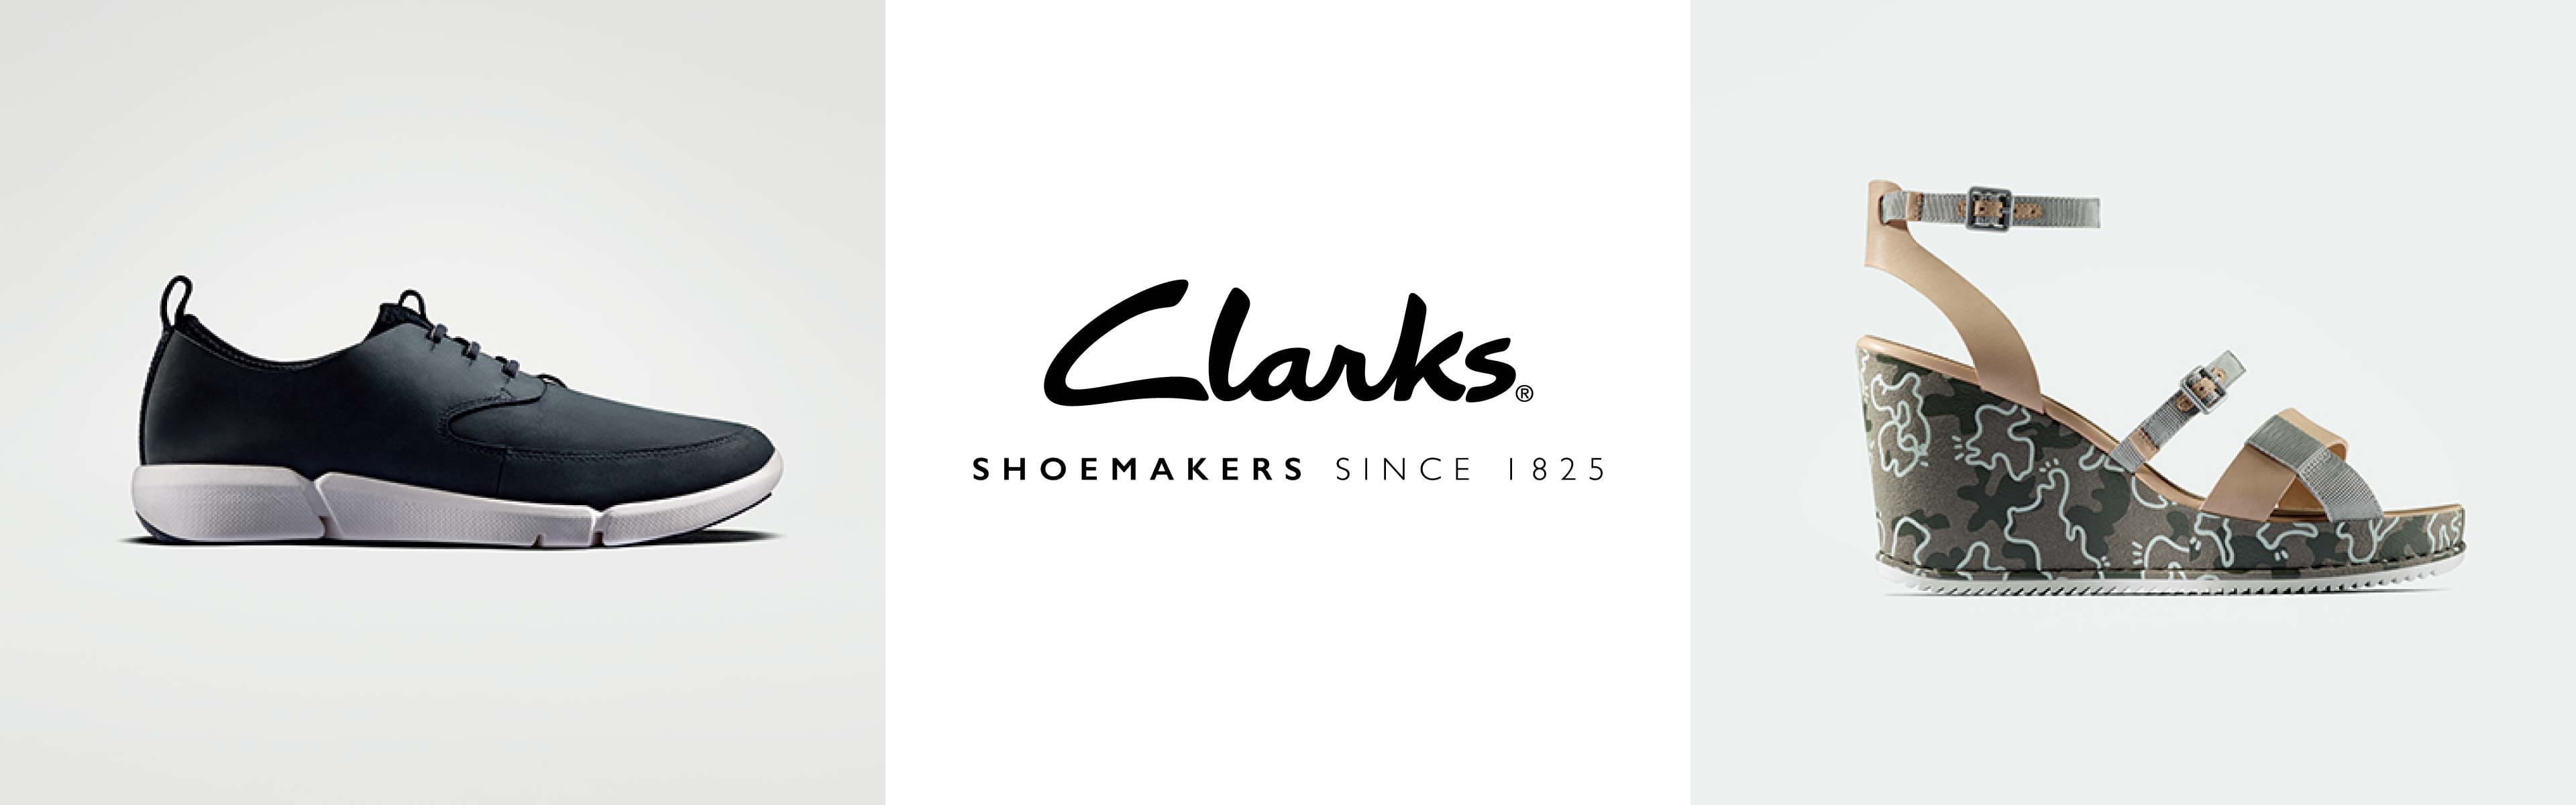 Skærpe At redigere Kollisionskursus Clarks - Shopping | Citygate Outlets